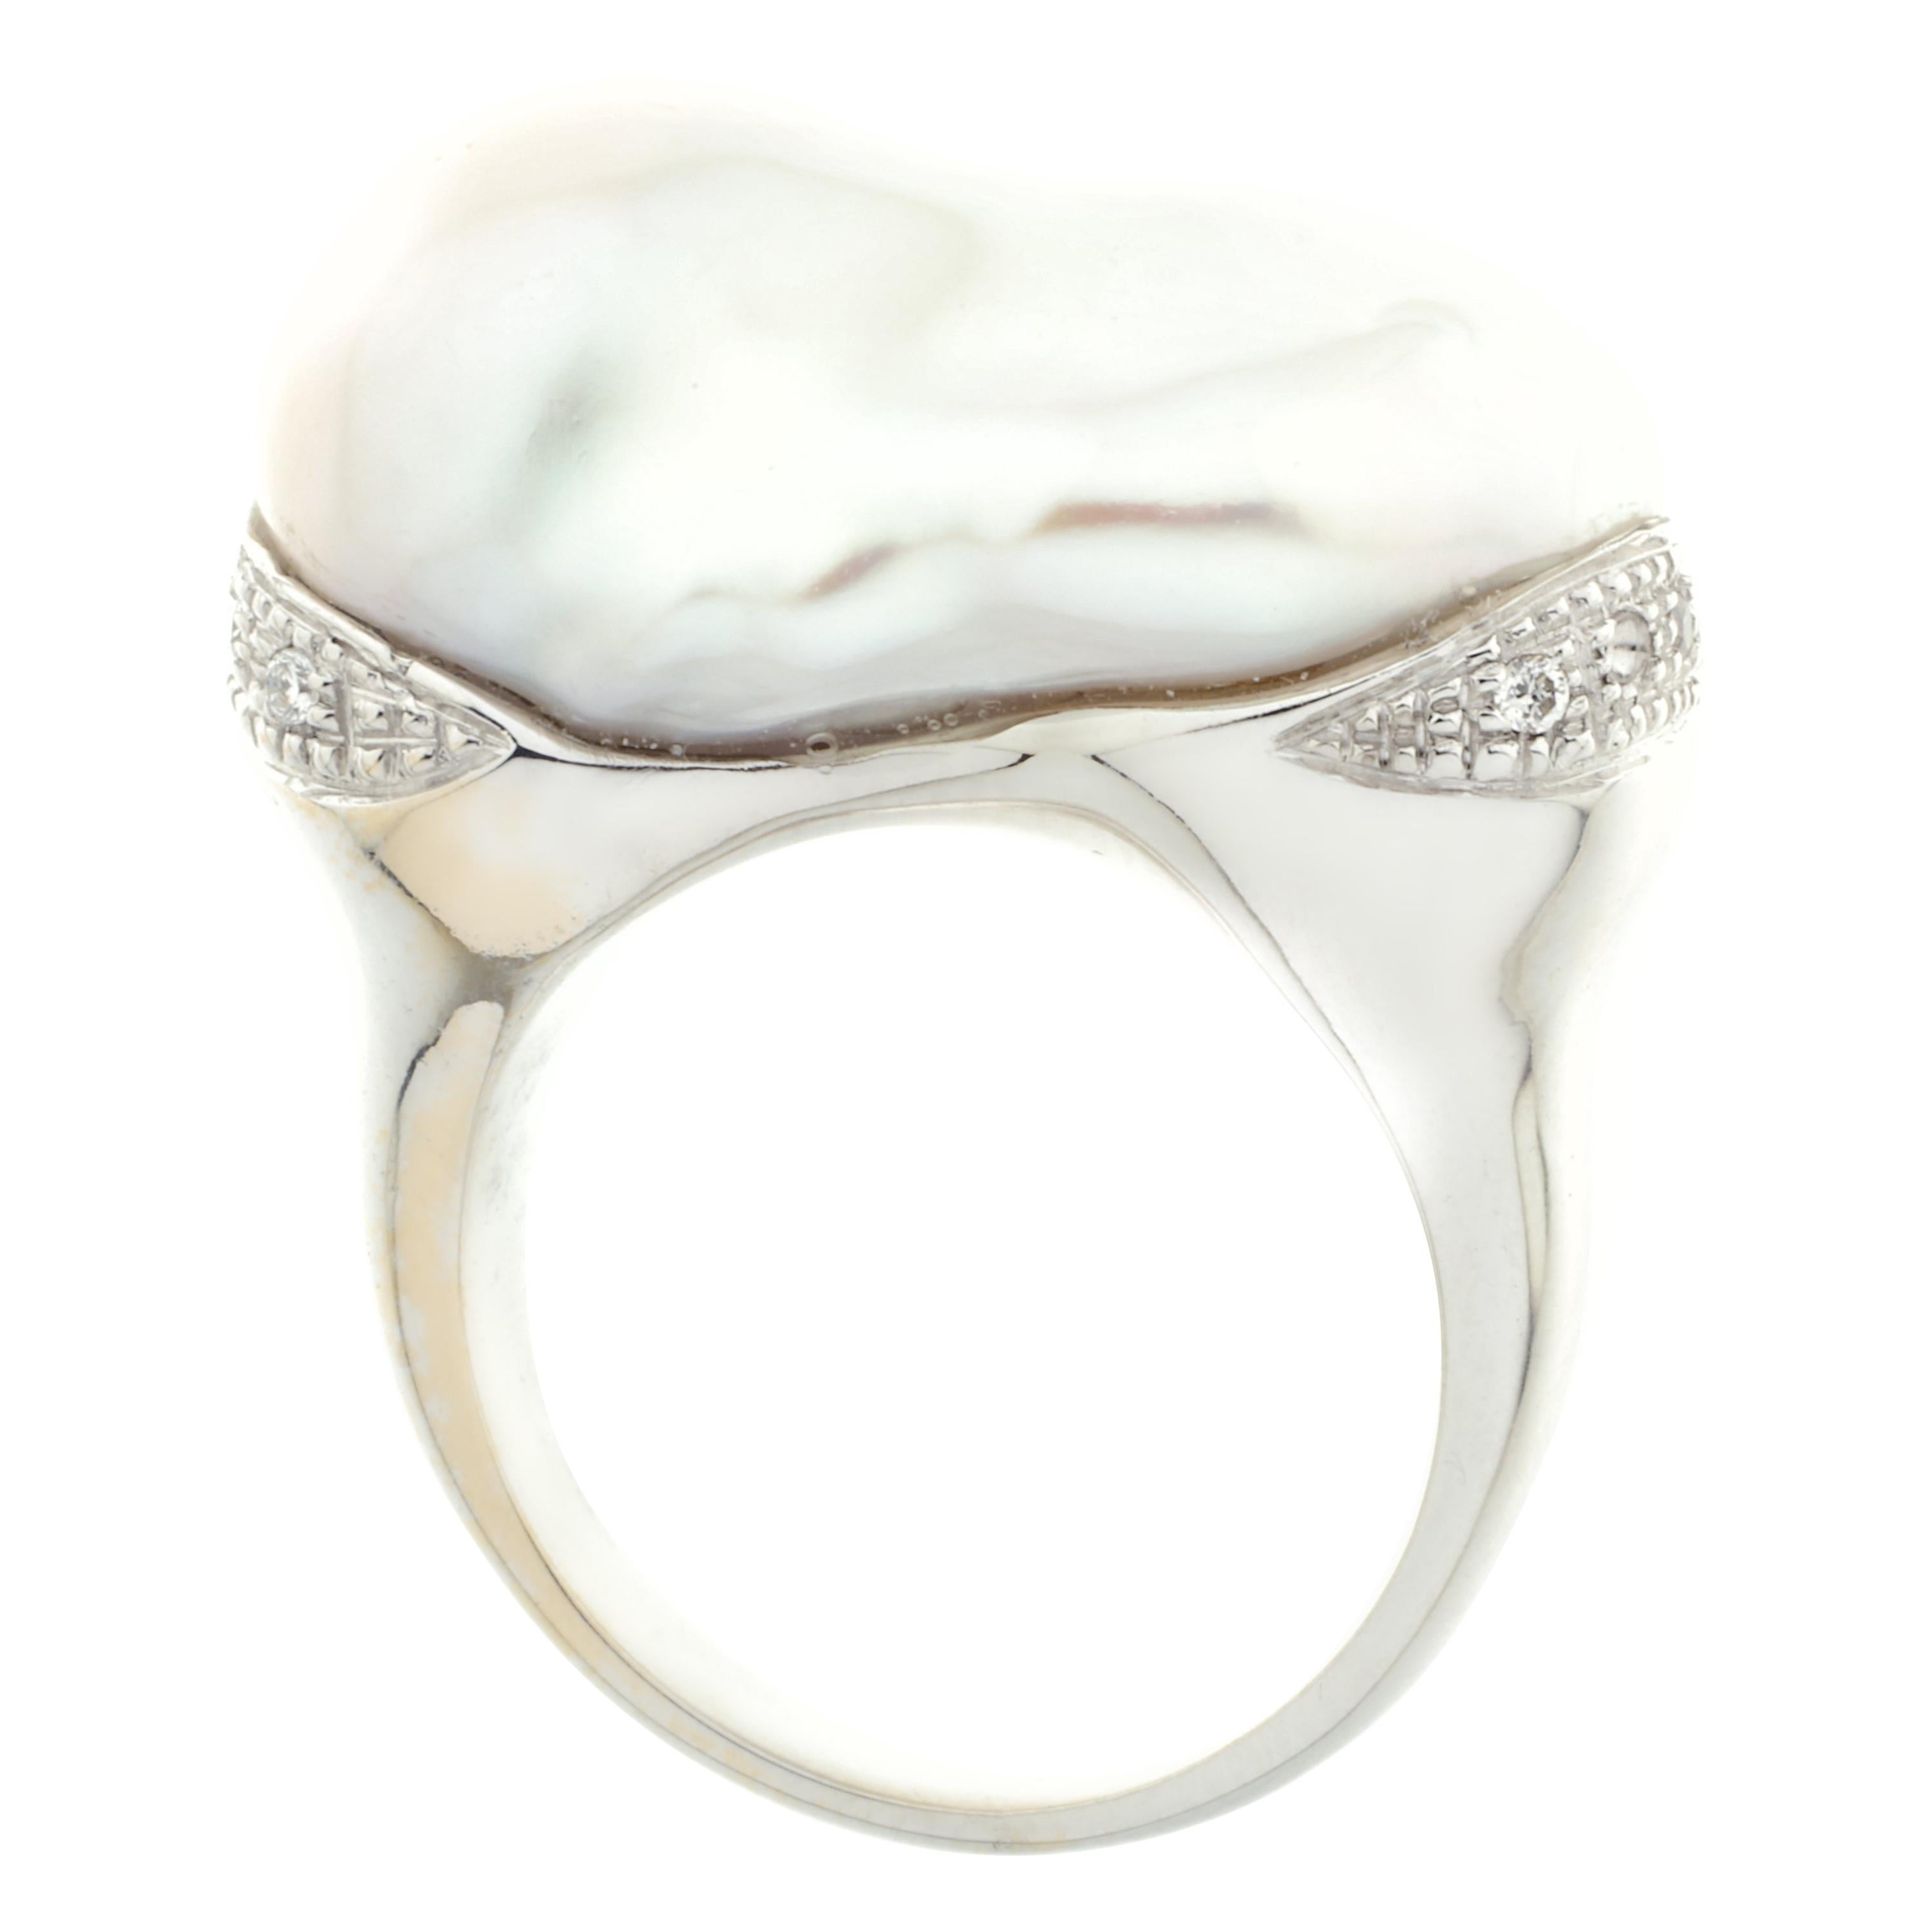 Uno splendido anello da cocktail magistralmente creato a mano in oro bianco 18 carati. Una grande perla coltivata è incastonata con dieci diamanti bianchi di grado G VS, che 